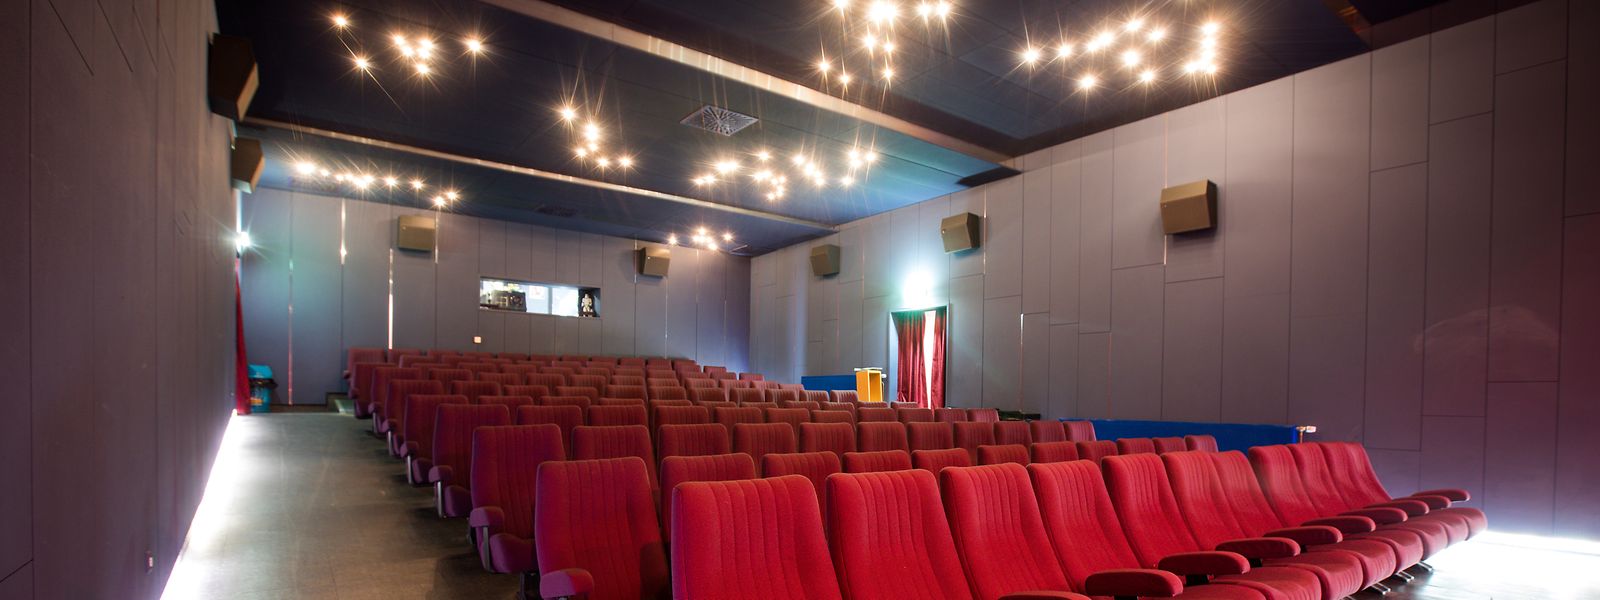 Klein, aber fein: Auf den Sesseln der vielen lokalen Kinos in Luxemburg kommen Filmliebhaber auf ihre Kosten.